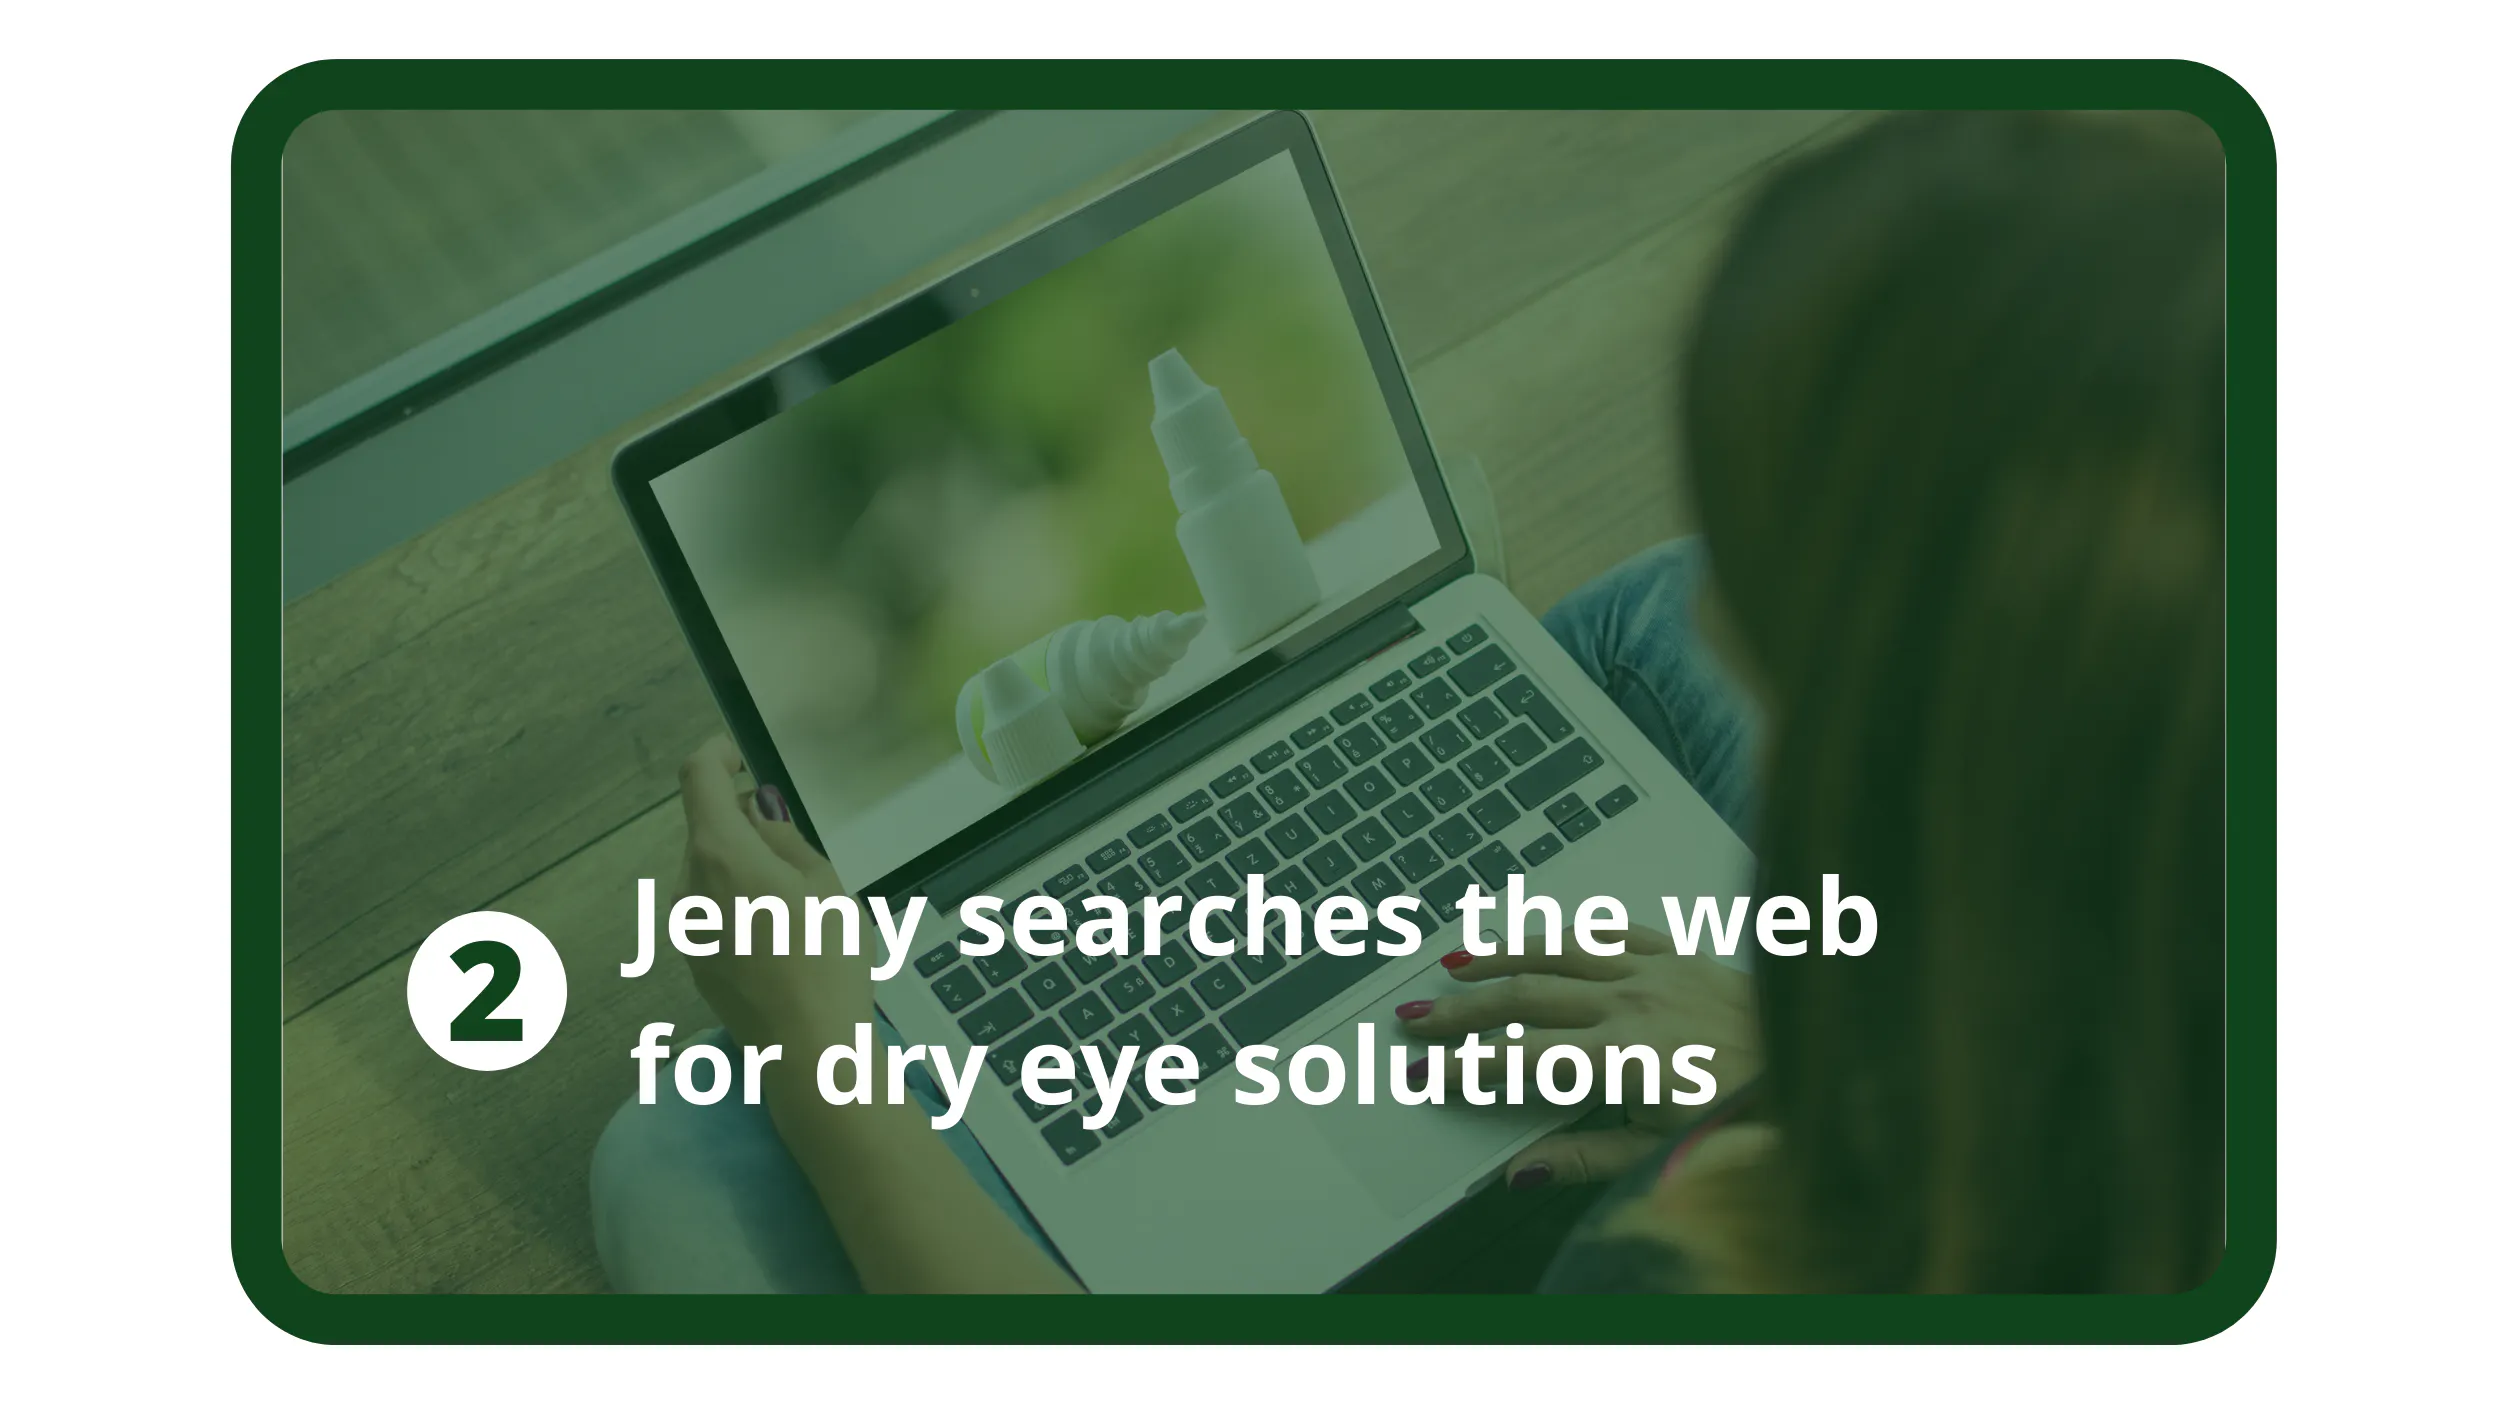 Jenny cerca sul web soluzioni per l'occhio secco